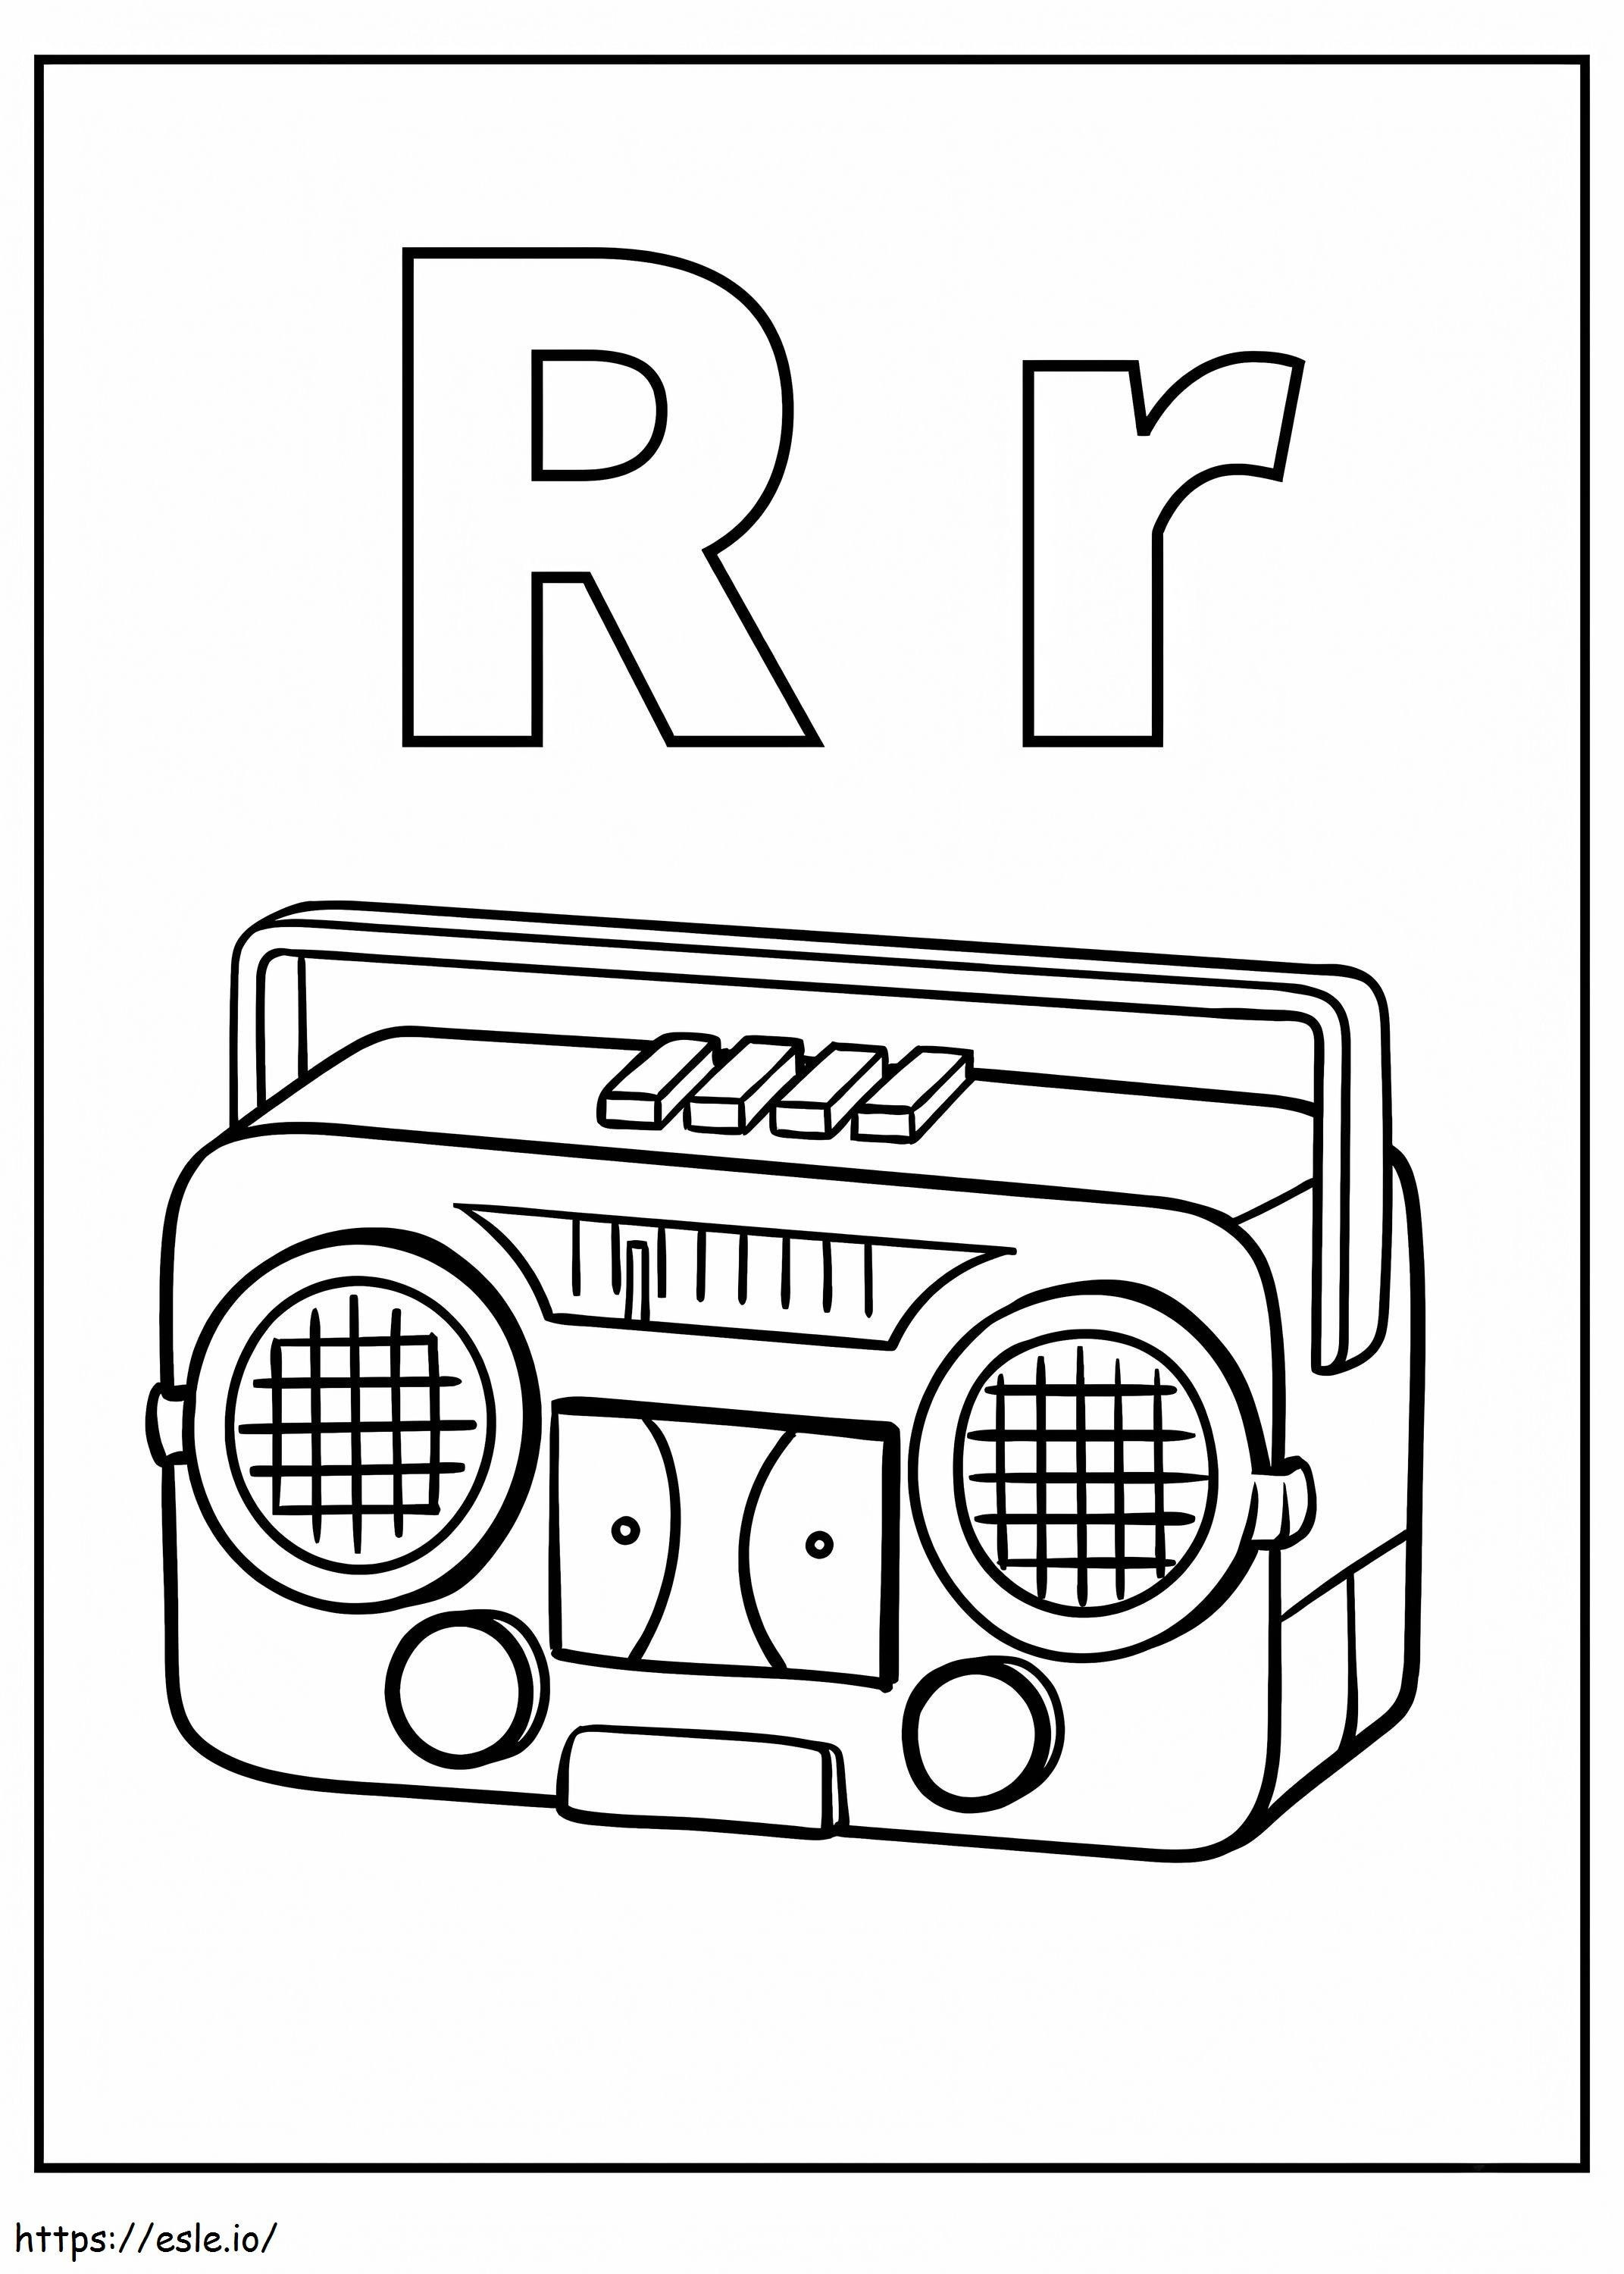 R betű és rádió kifestő